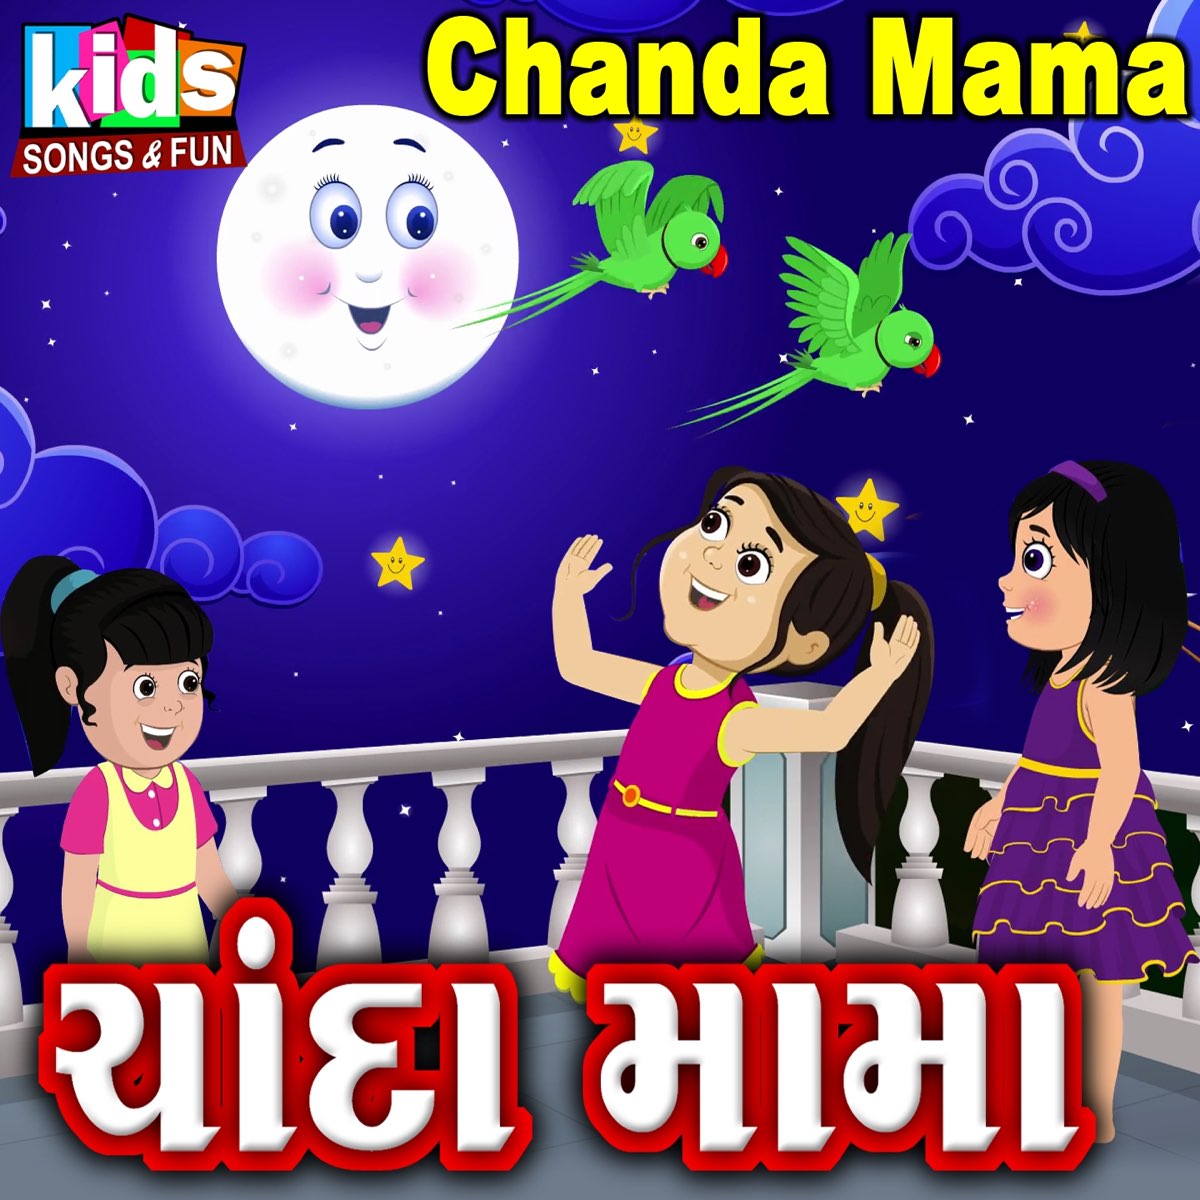 Chanda Mama - Single by Ruchita Prajapati on Apple Music